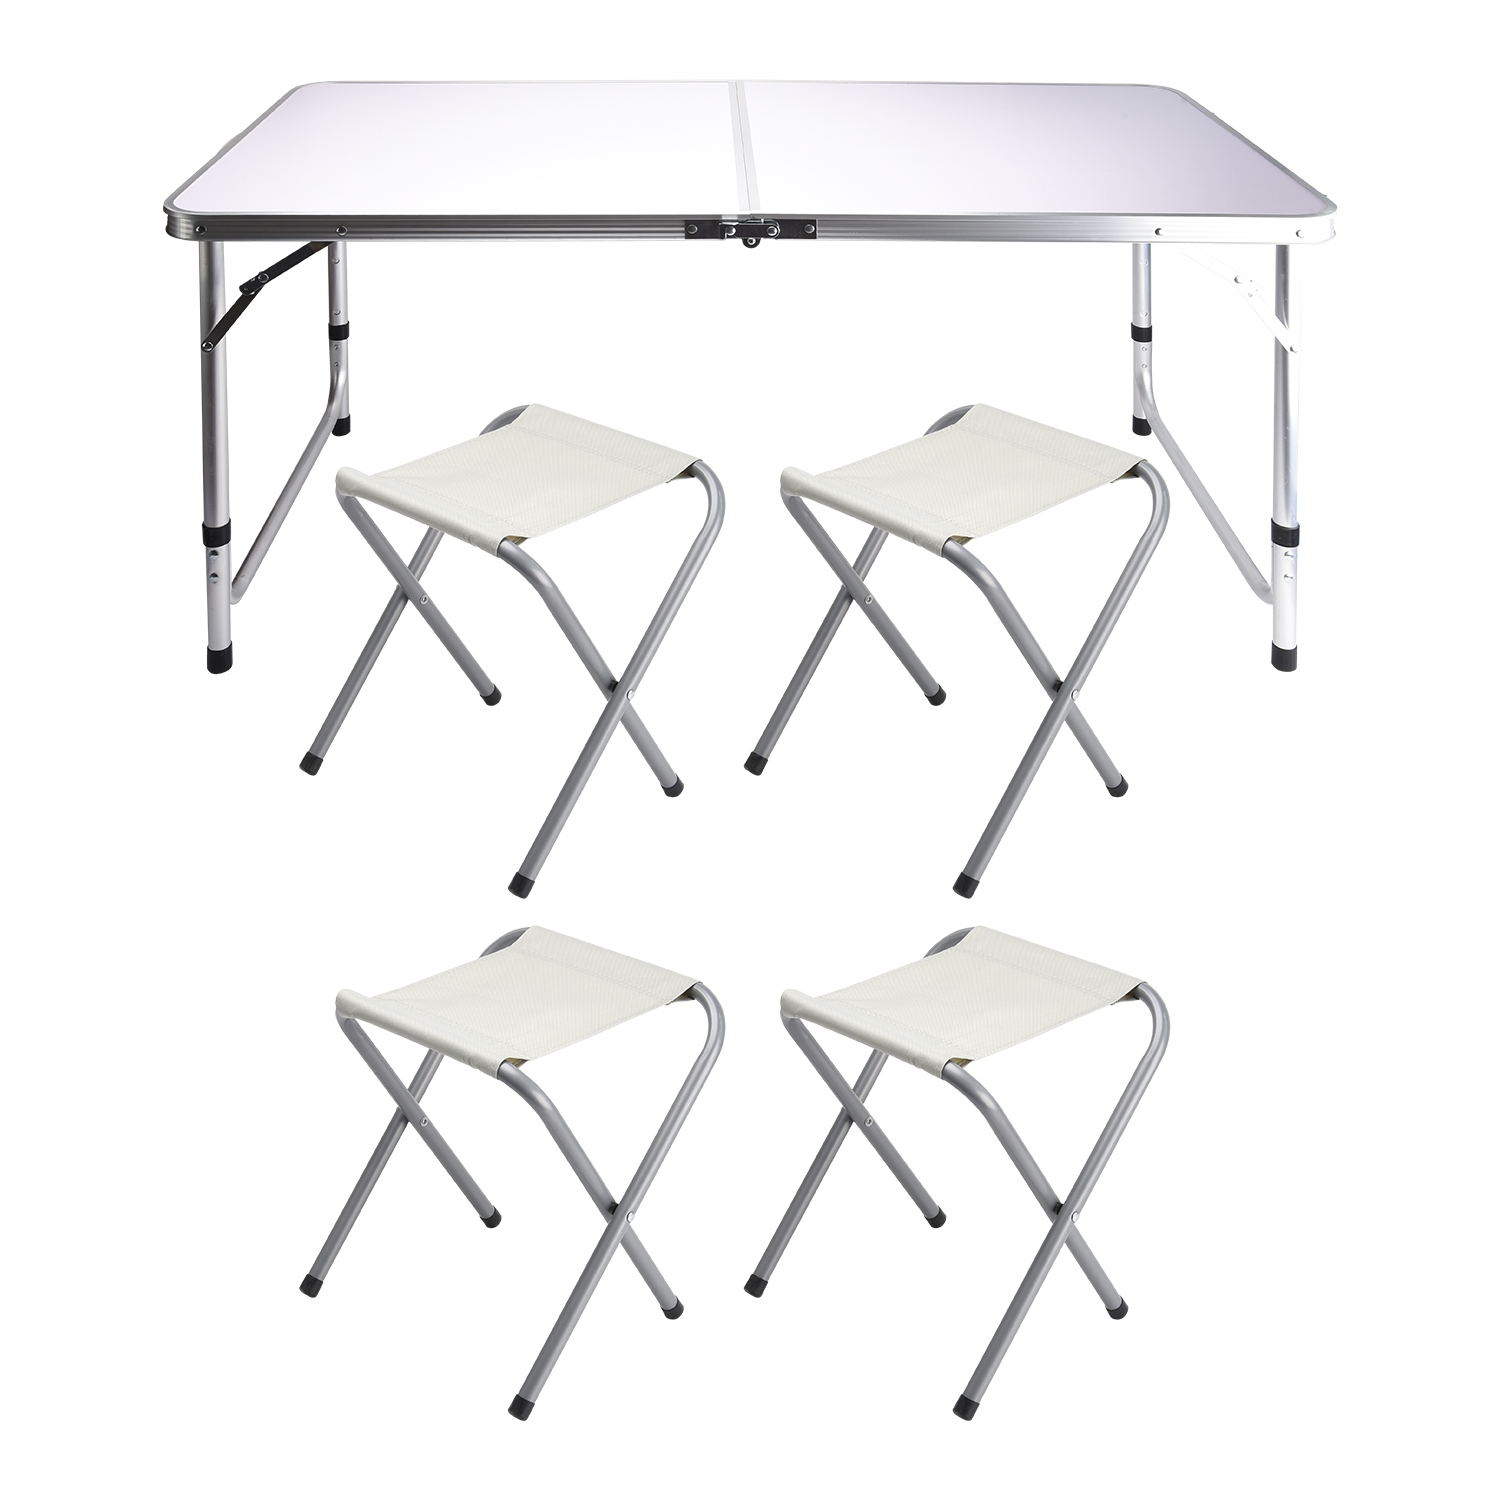 фото Туристический стол со стульями proficamp basic стол 120х60х70 см, 4 стула 32х27х35 см